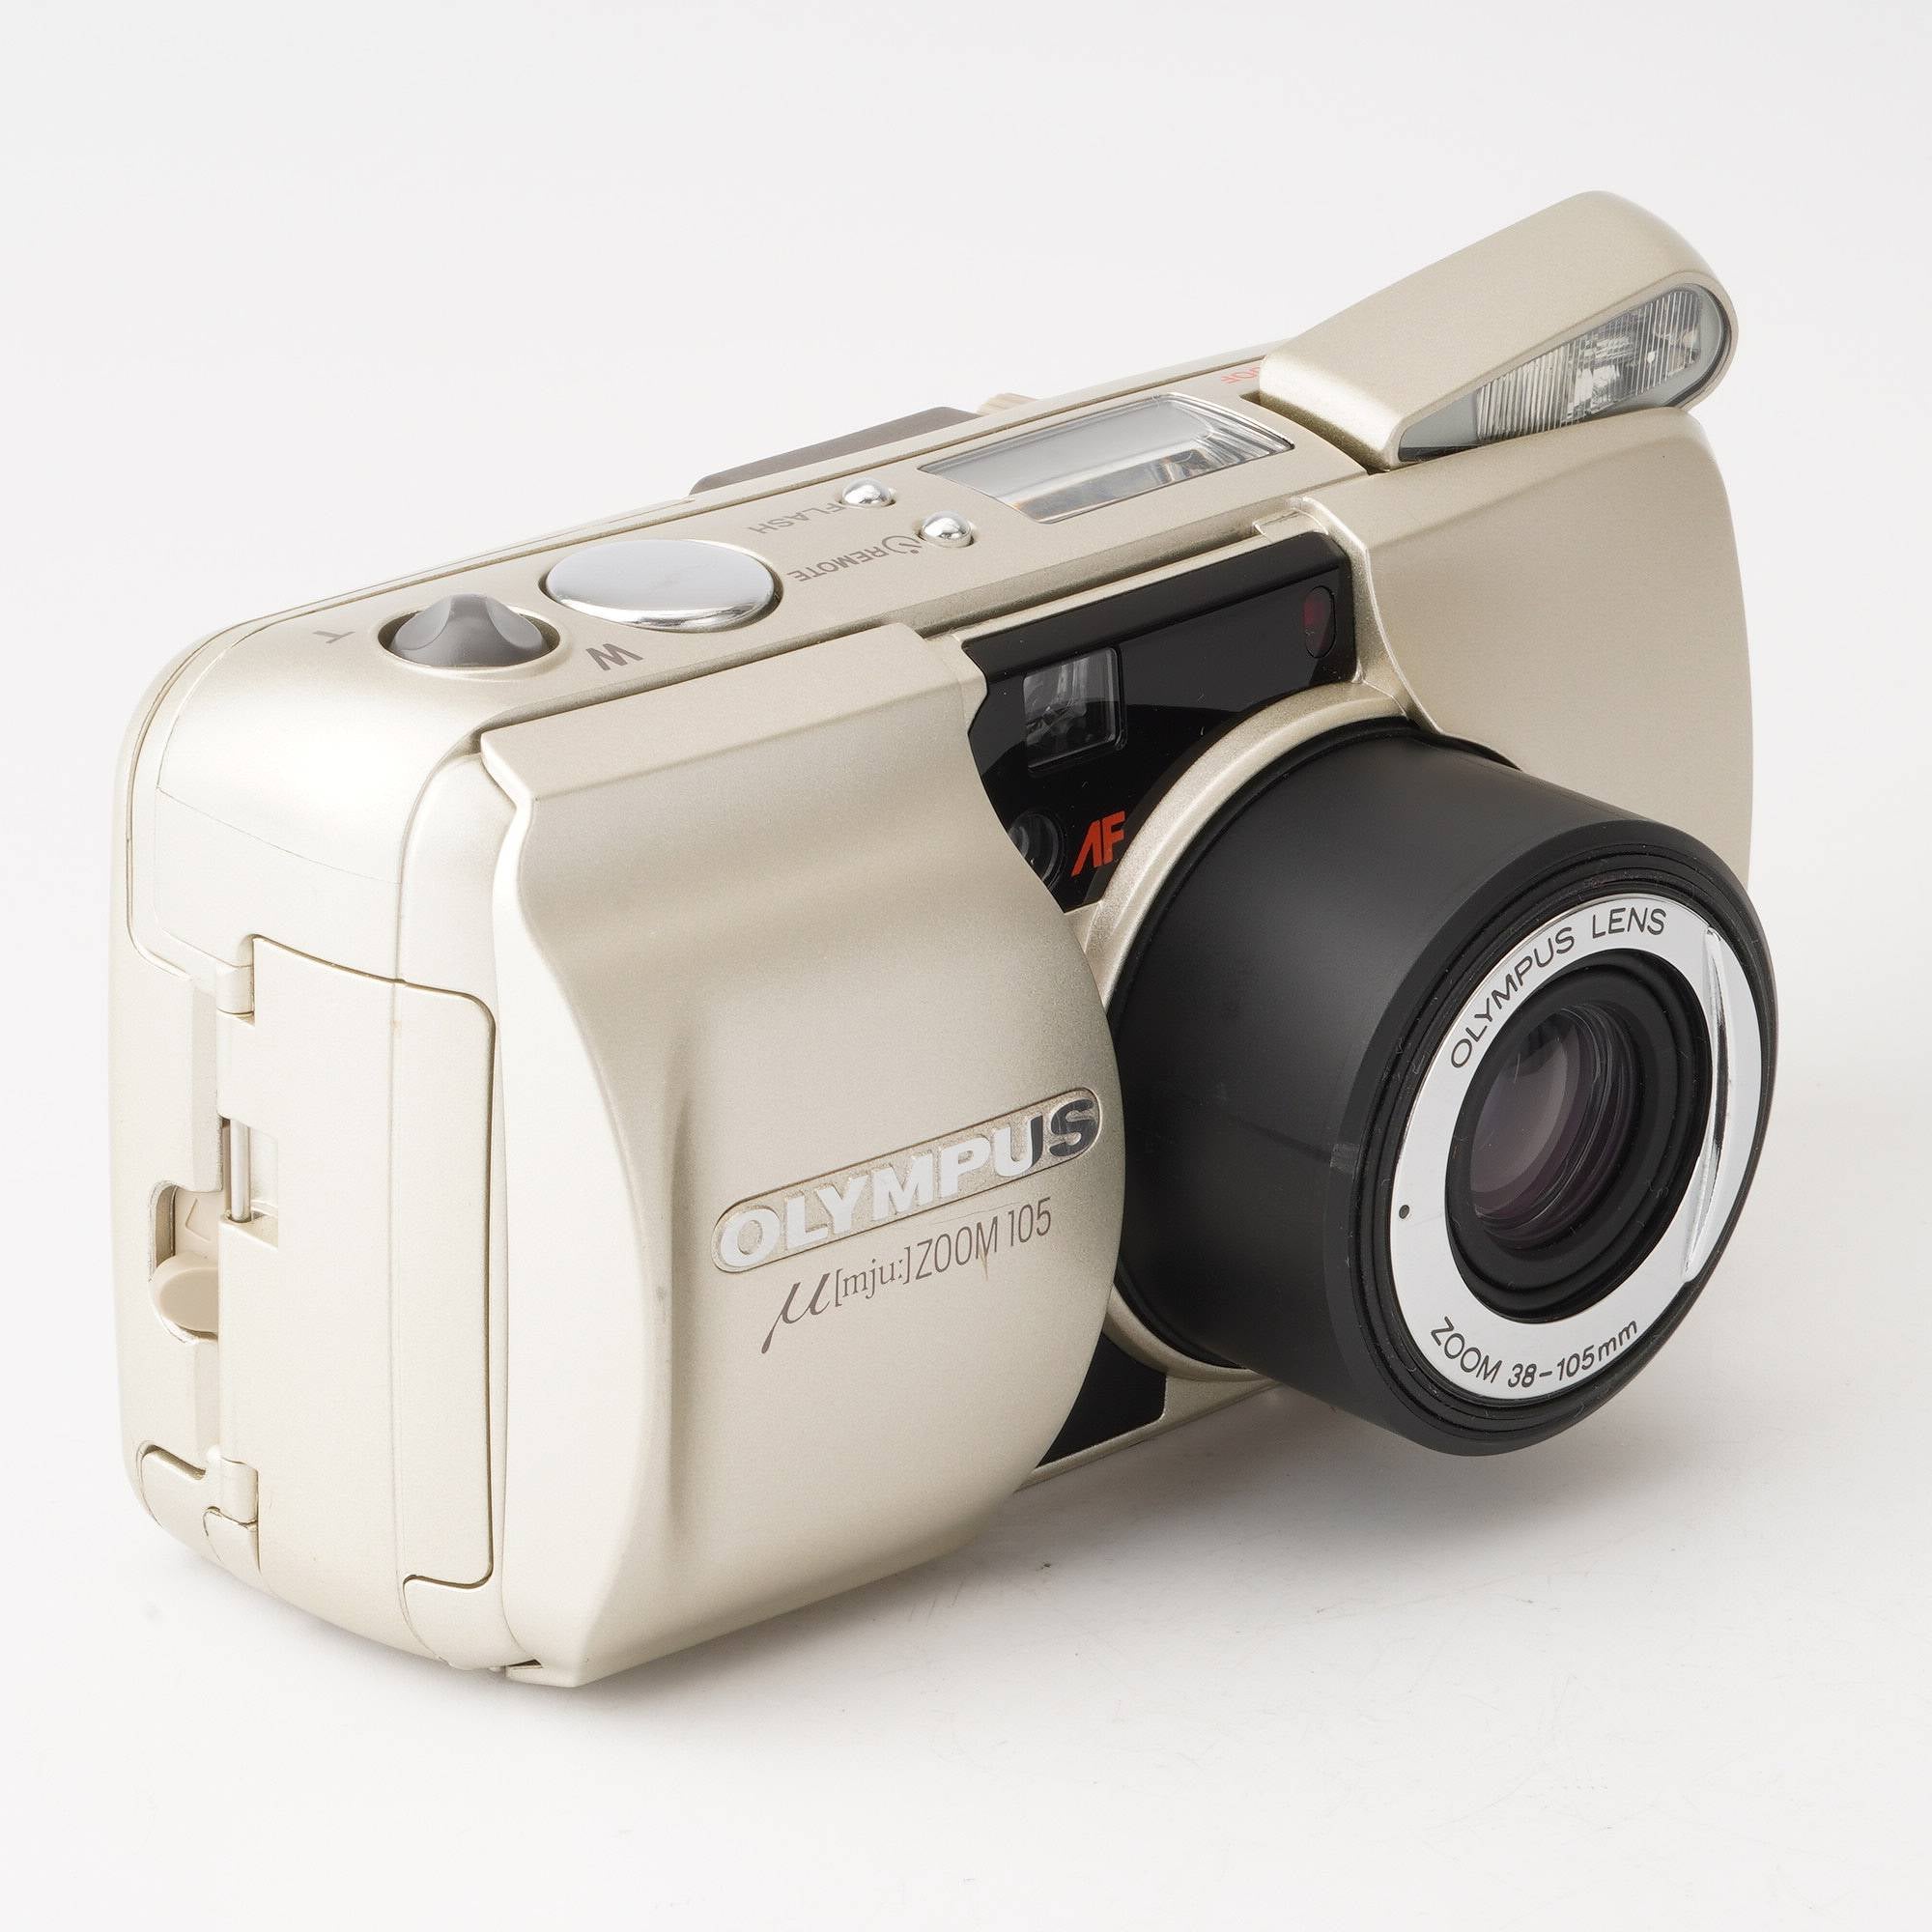 オリンパス Olympus ミューμ ZOOM 105 / 38-105mm – Natural Camera